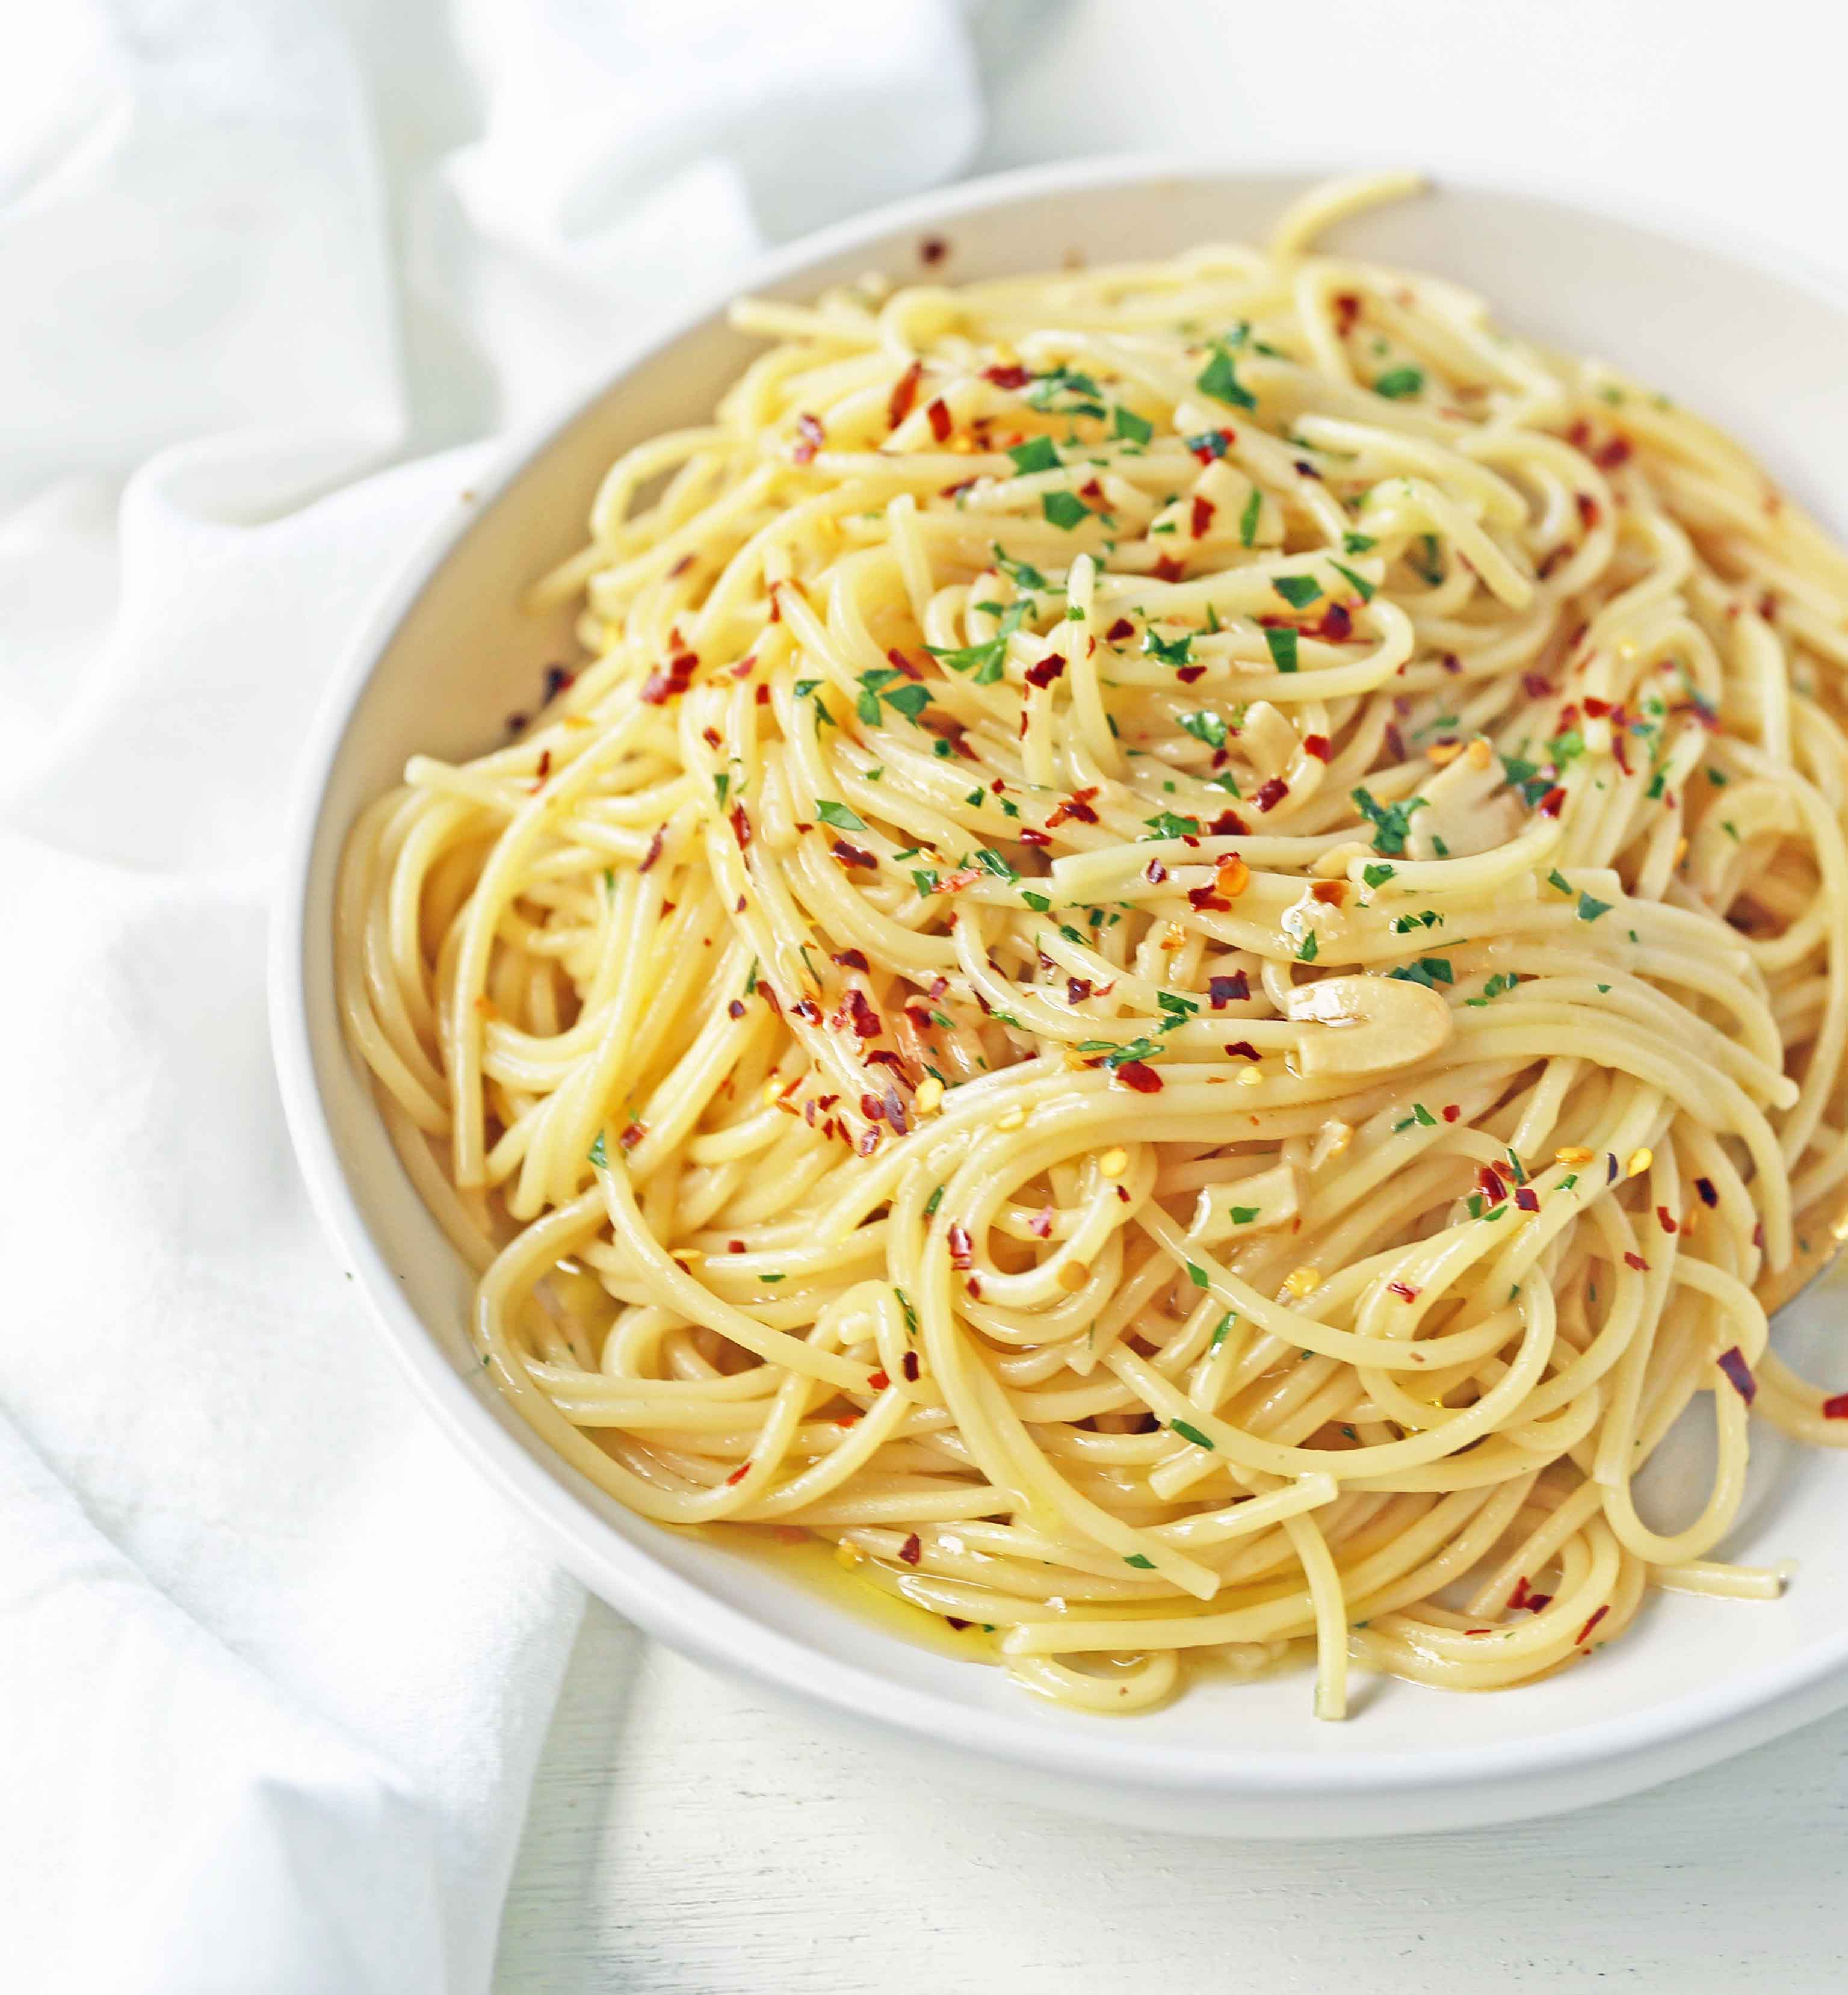 Spaghetti Aglio e Olio (Spaghetti with Garlic and Olive Oil